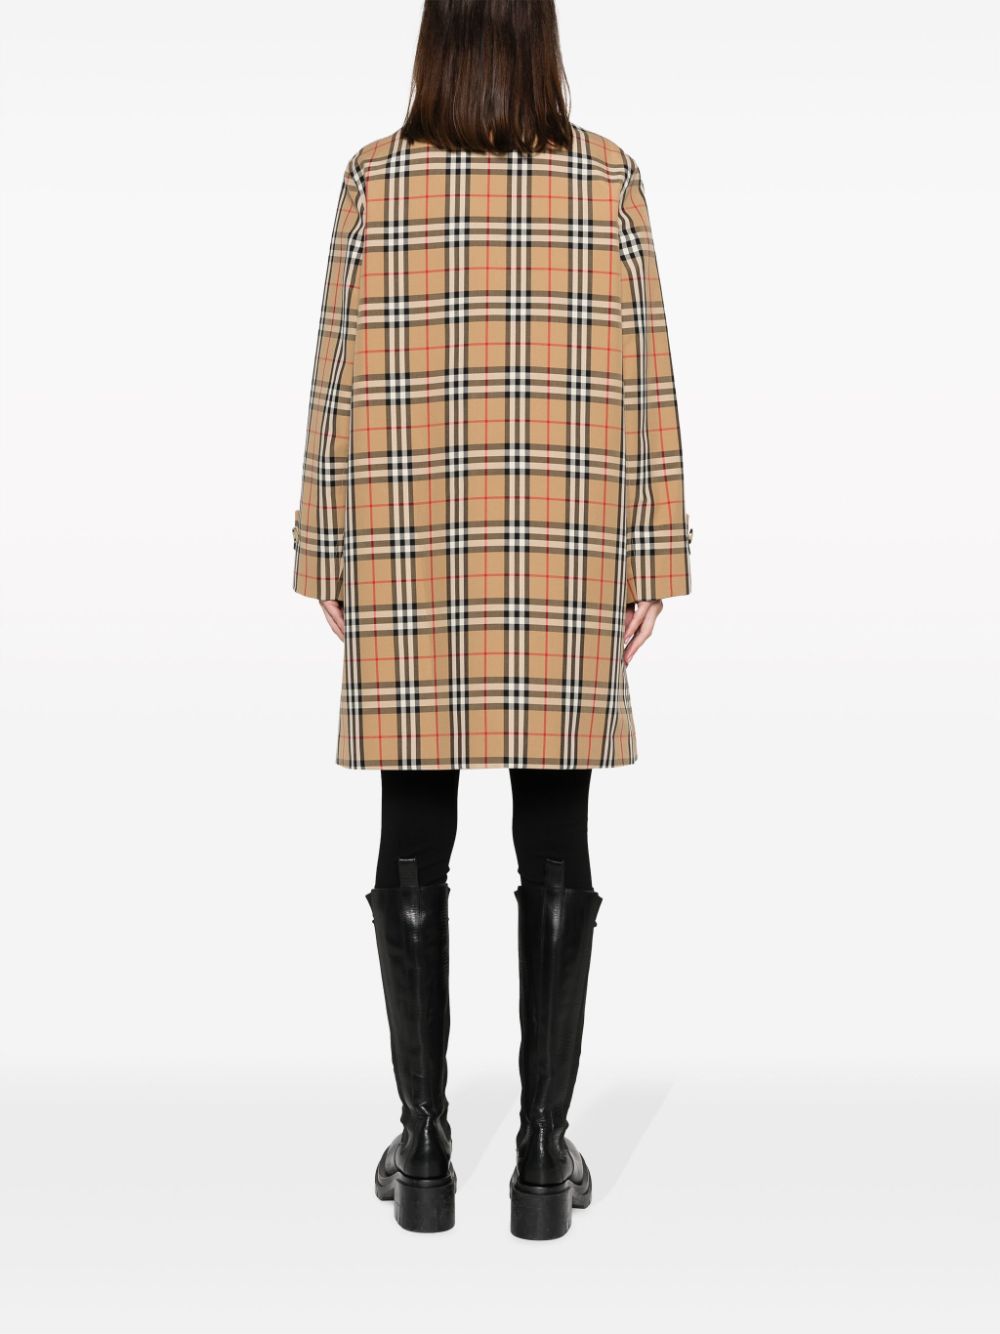 Plaid-Check Raincoat for Women - British Luxury Brand